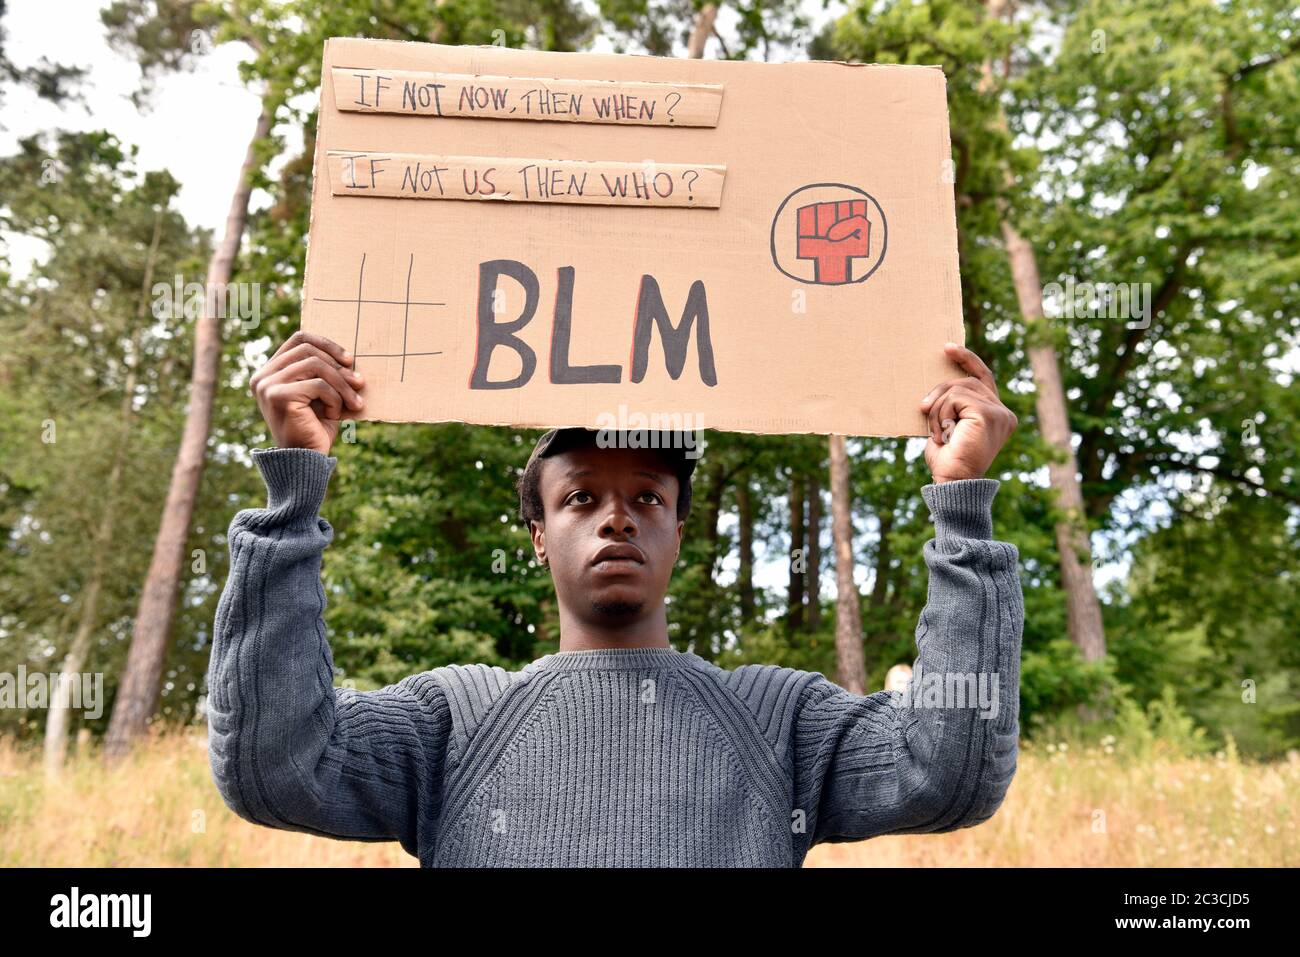 La vie noire compte : les personnes protestant à la suite de l'assassinat de George Floyd par la police (14 octobre 1973-25 mai 2020) aux États-Unis, à Bordon, au Hampshire, au Royaume-Uni. Banque D'Images